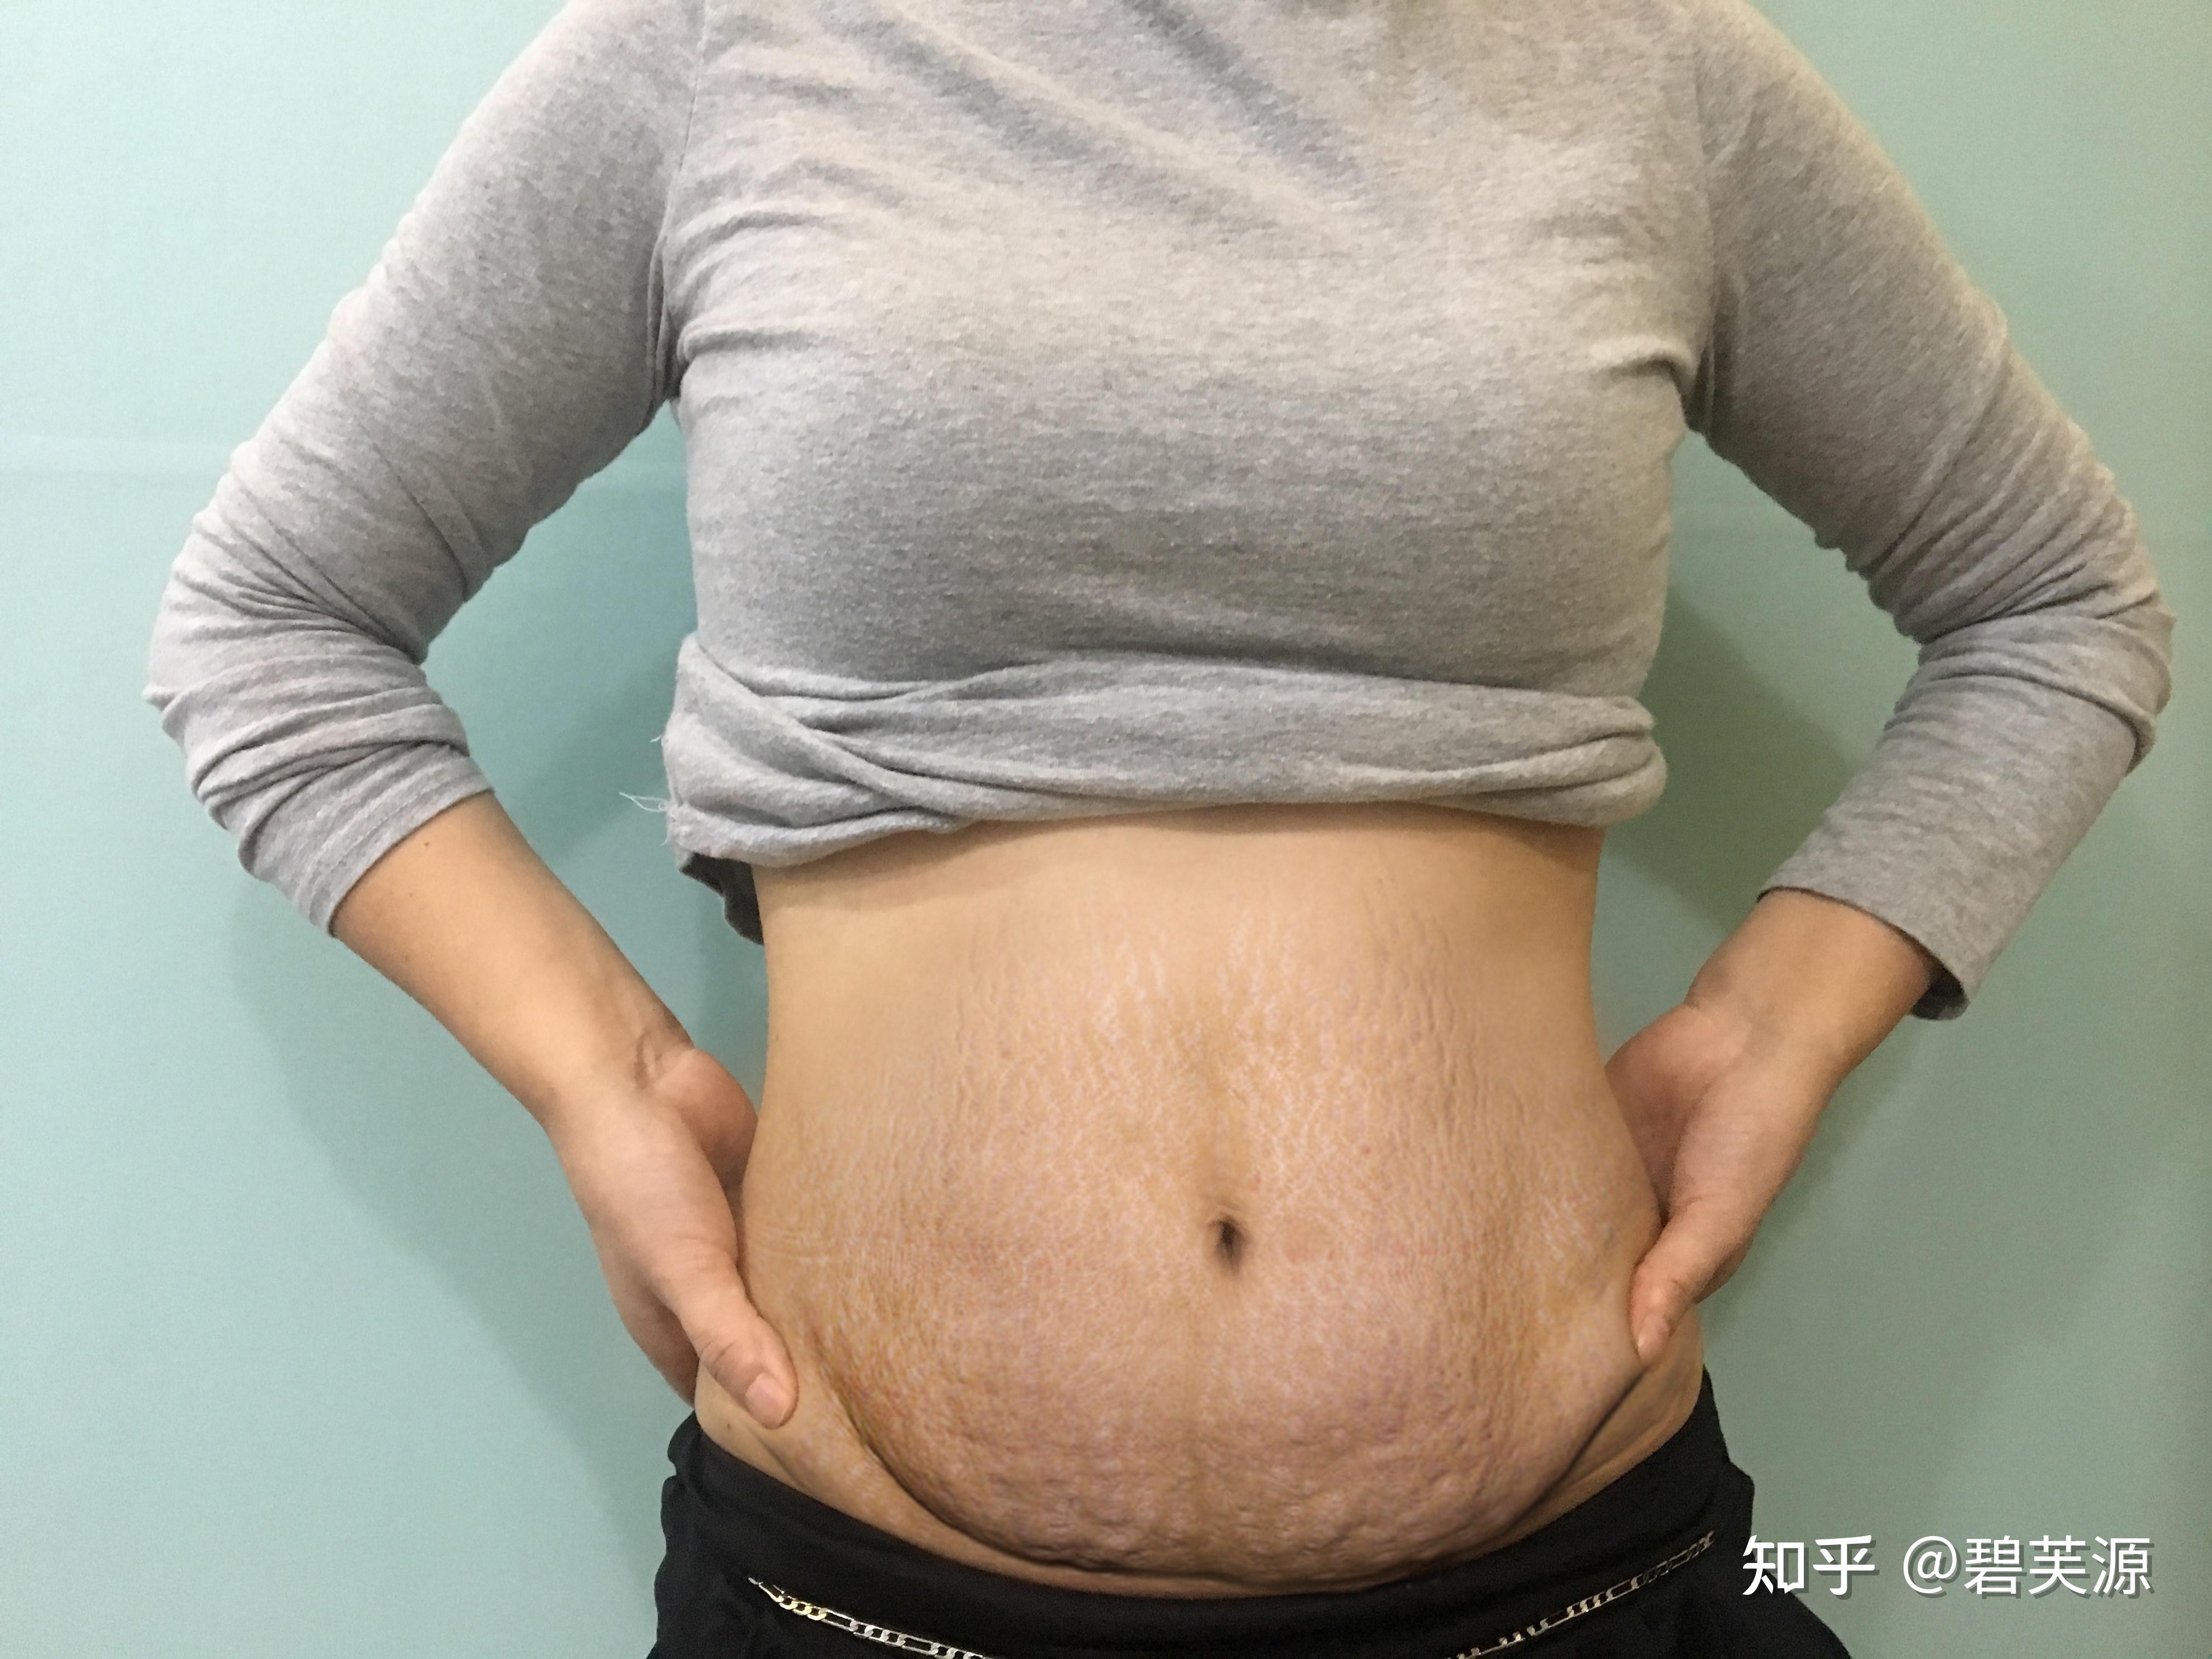 女人肚子有妊娠纹照片图片